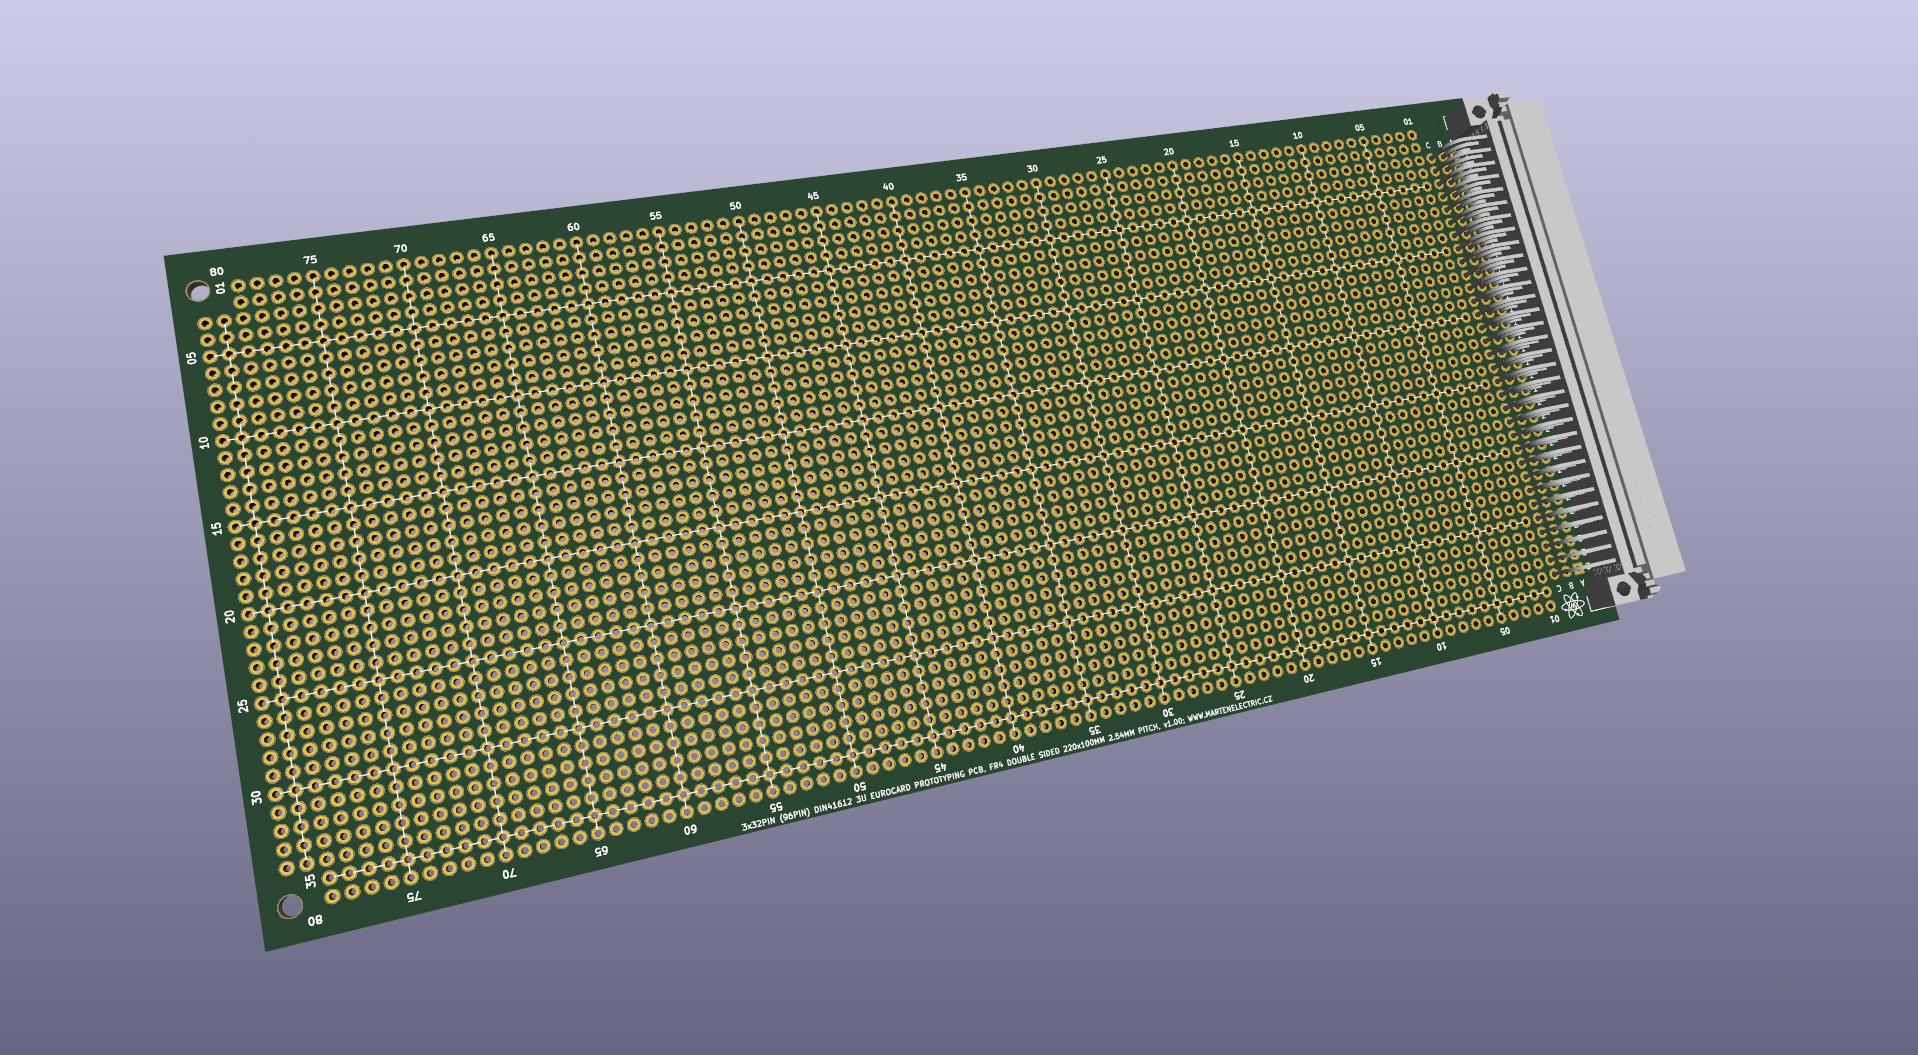 Eurocard DIN41612 3U Prototyping board PCB card 220 x 100mm